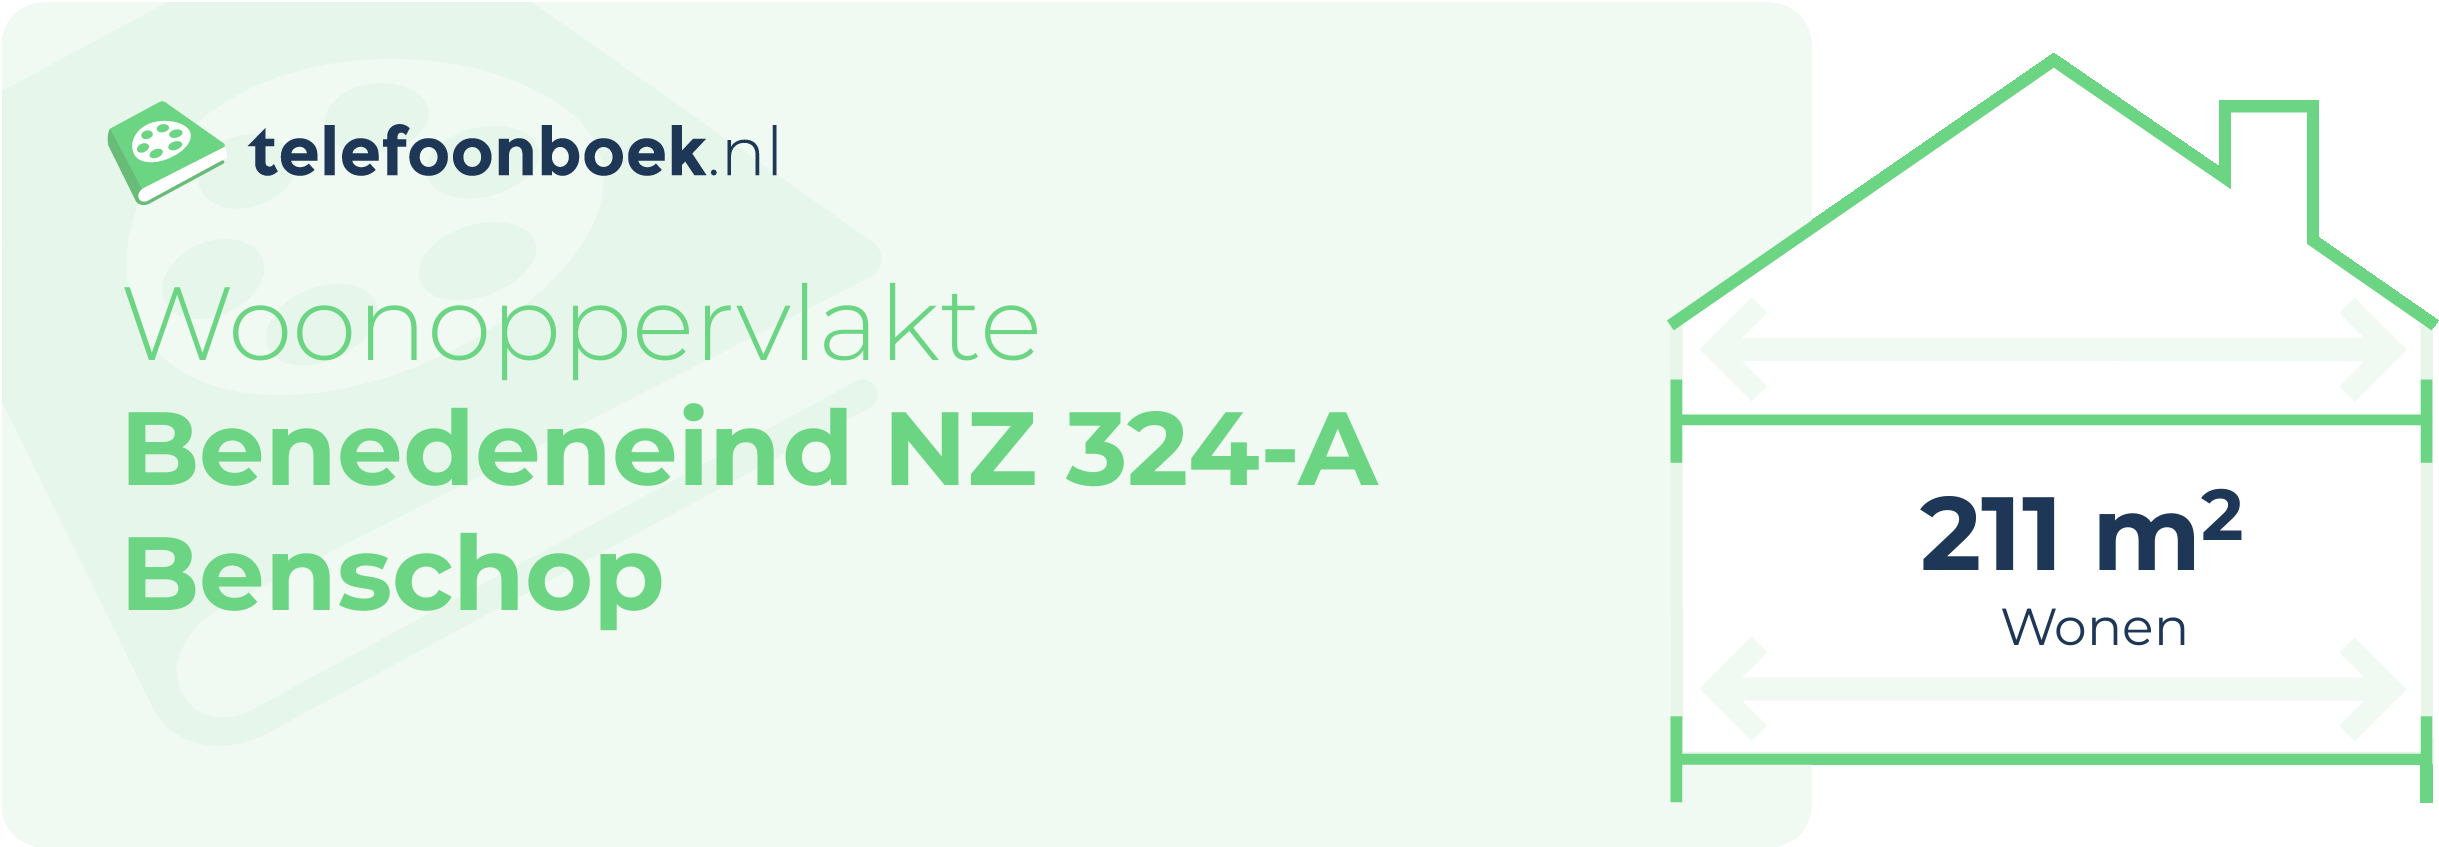 Woonoppervlakte Benedeneind NZ 324-A Benschop